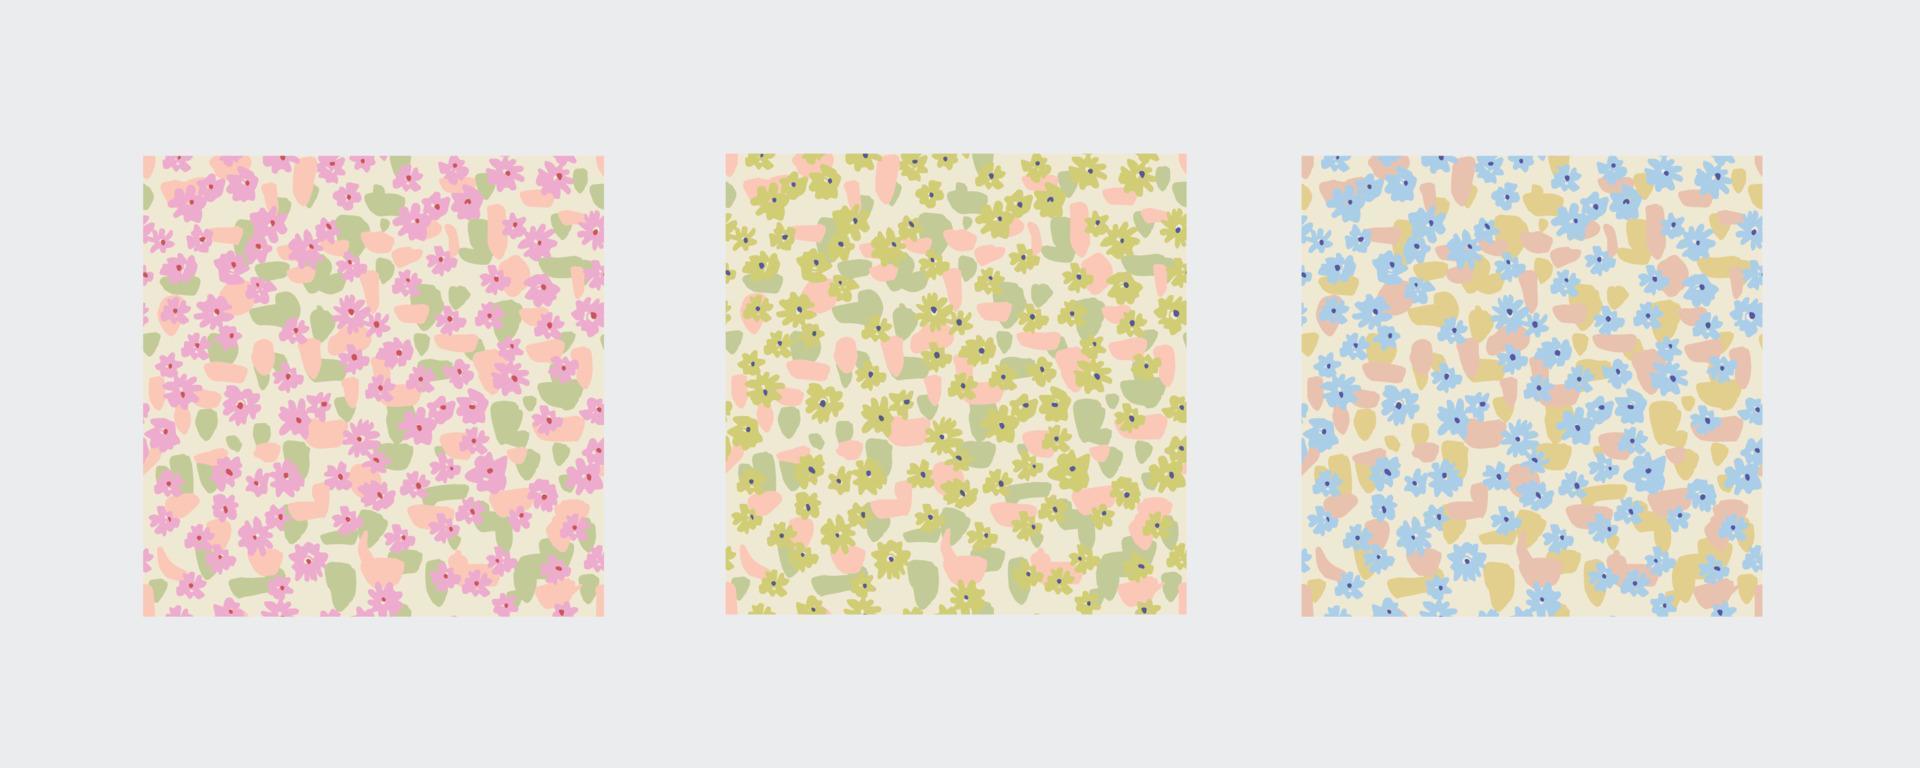 vector klein ditsy bloem illustratie naadloos herhaling patroon 3 kleur manieren reeks